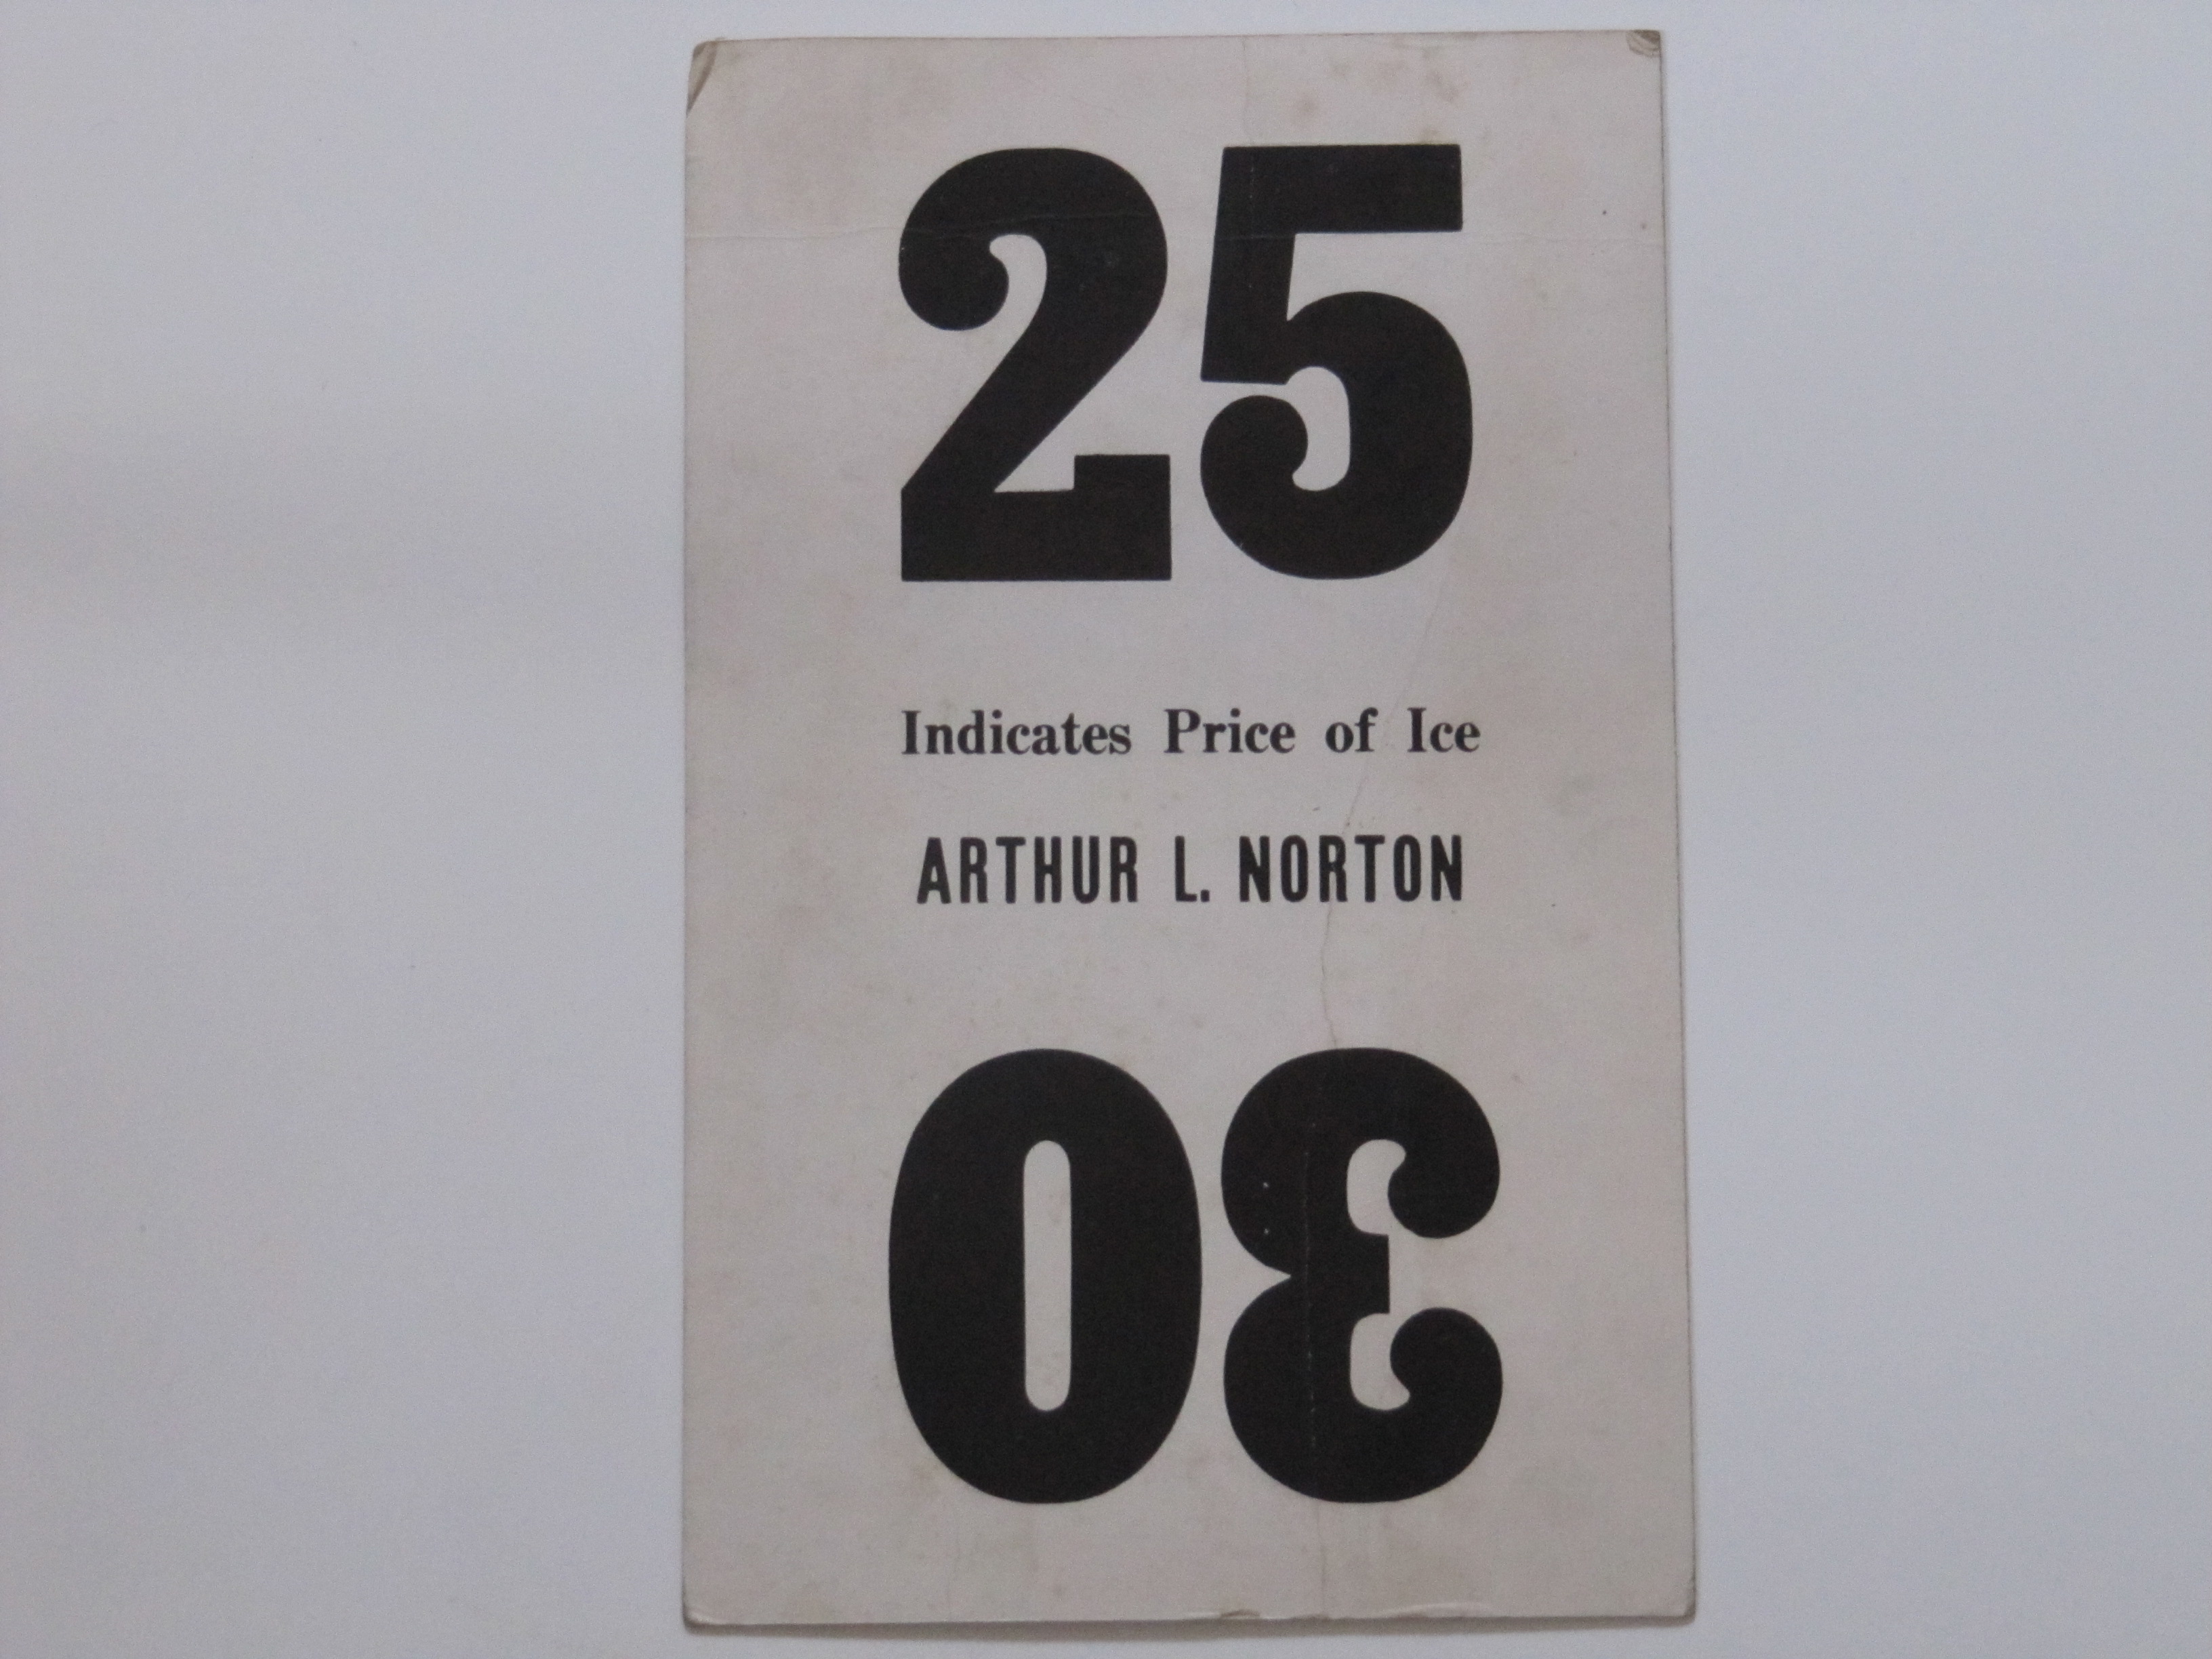 Arthur L. Norton